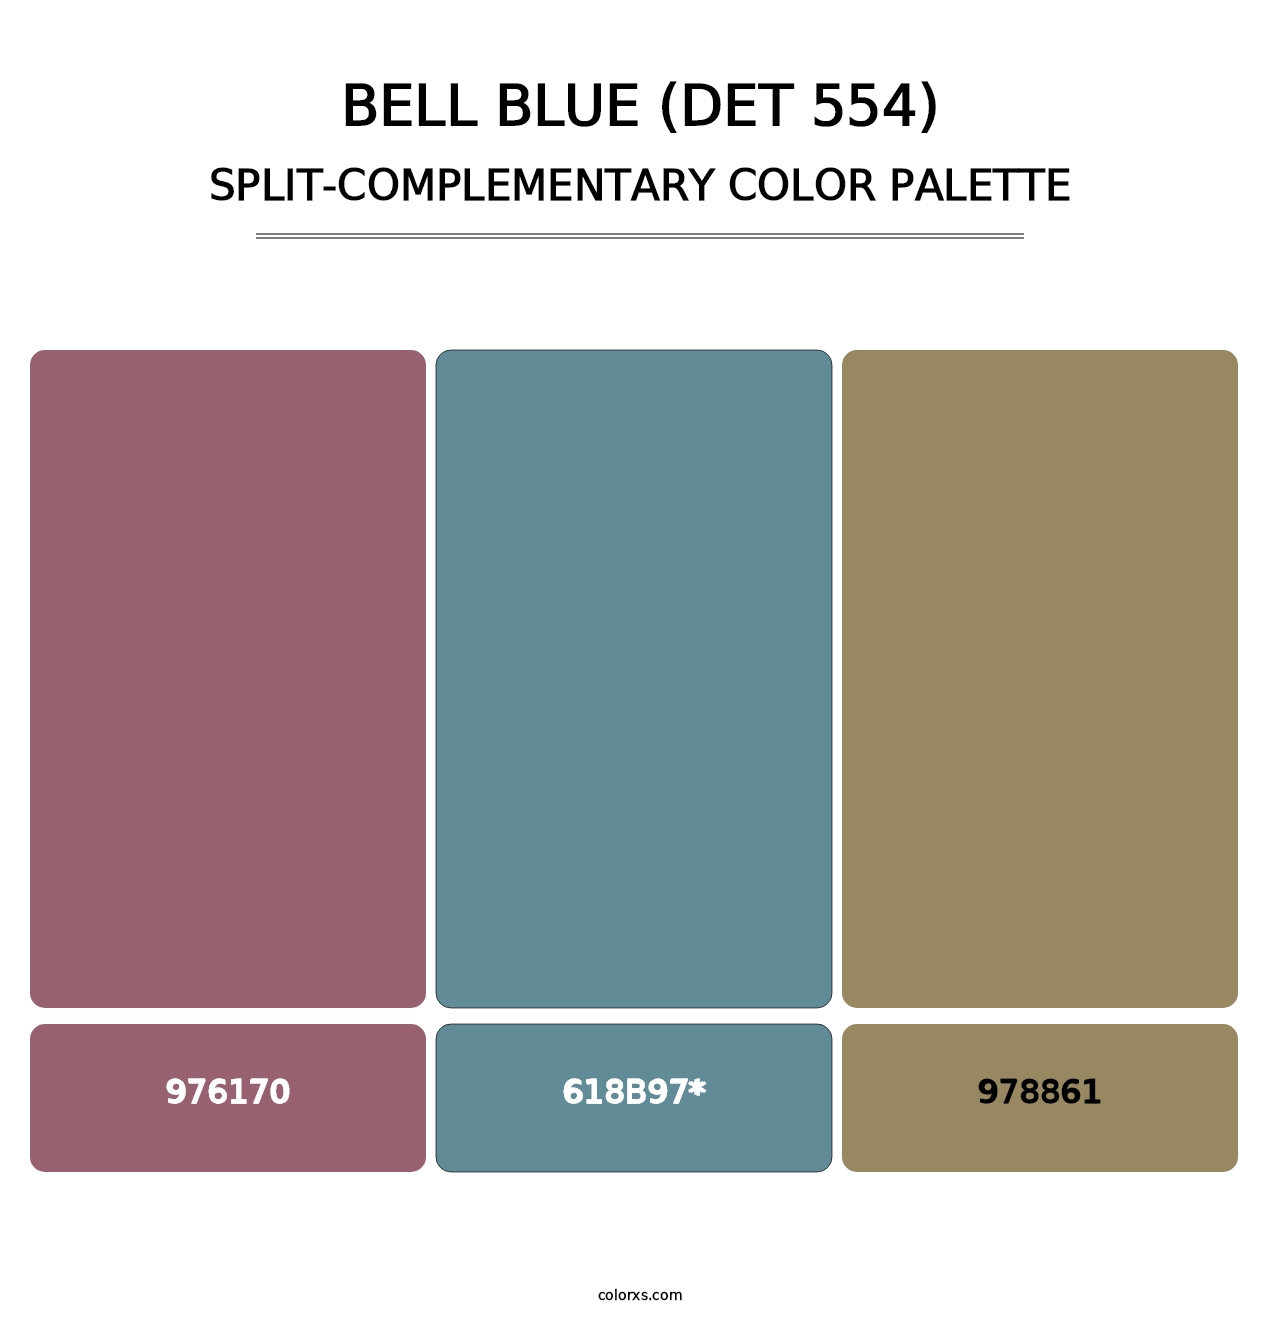 Bell Blue (DET 554) - Split-Complementary Color Palette